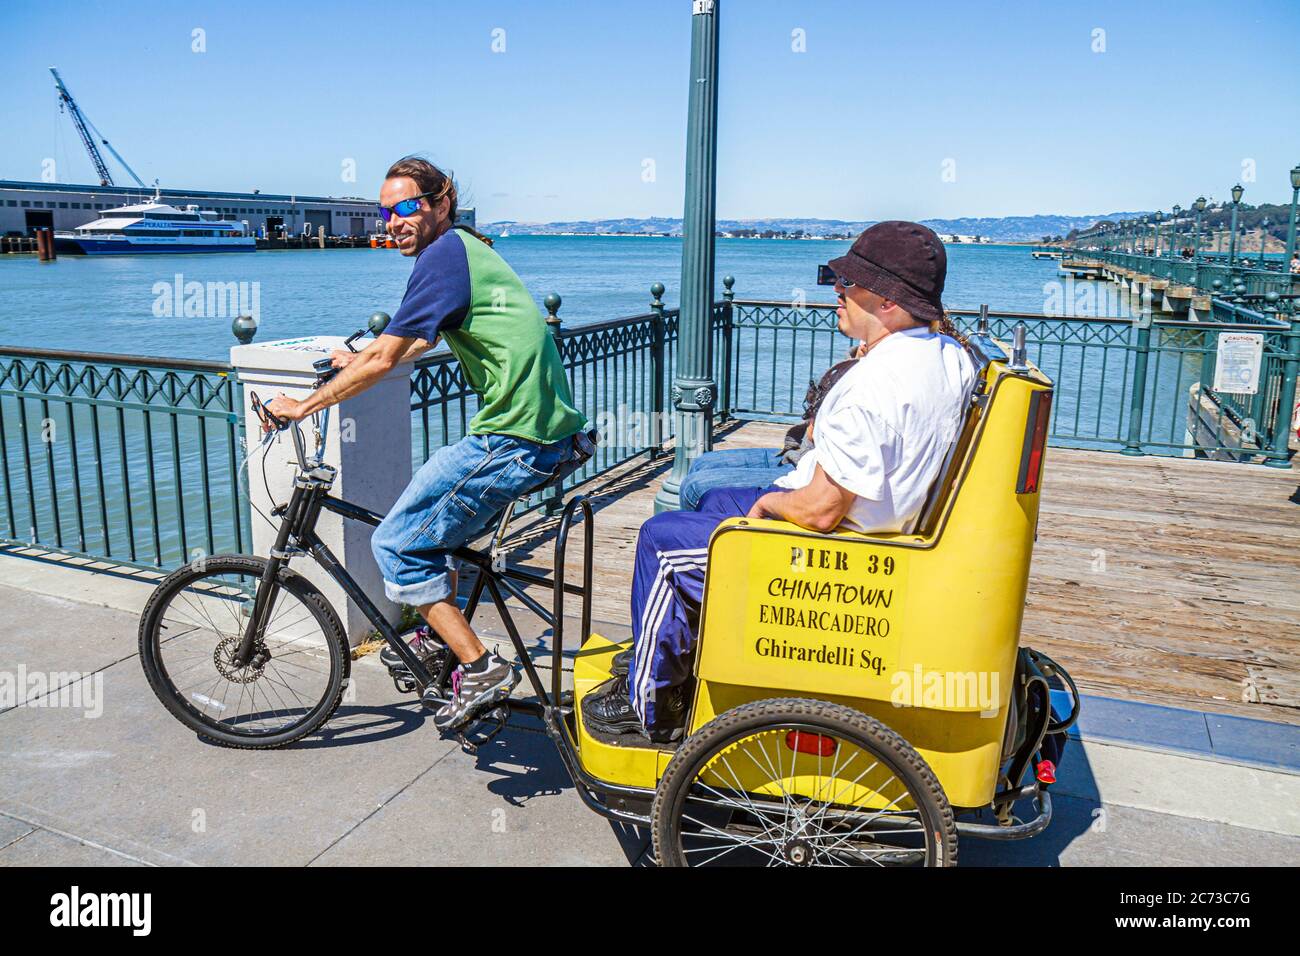 San Francisco California, The Embarcadero, San Francisco Bay, Bay Trail, passeggiata pubblica, area ricreativa sul lungomare, pedicab, taxi, uomo uomini maschio adulti Foto Stock